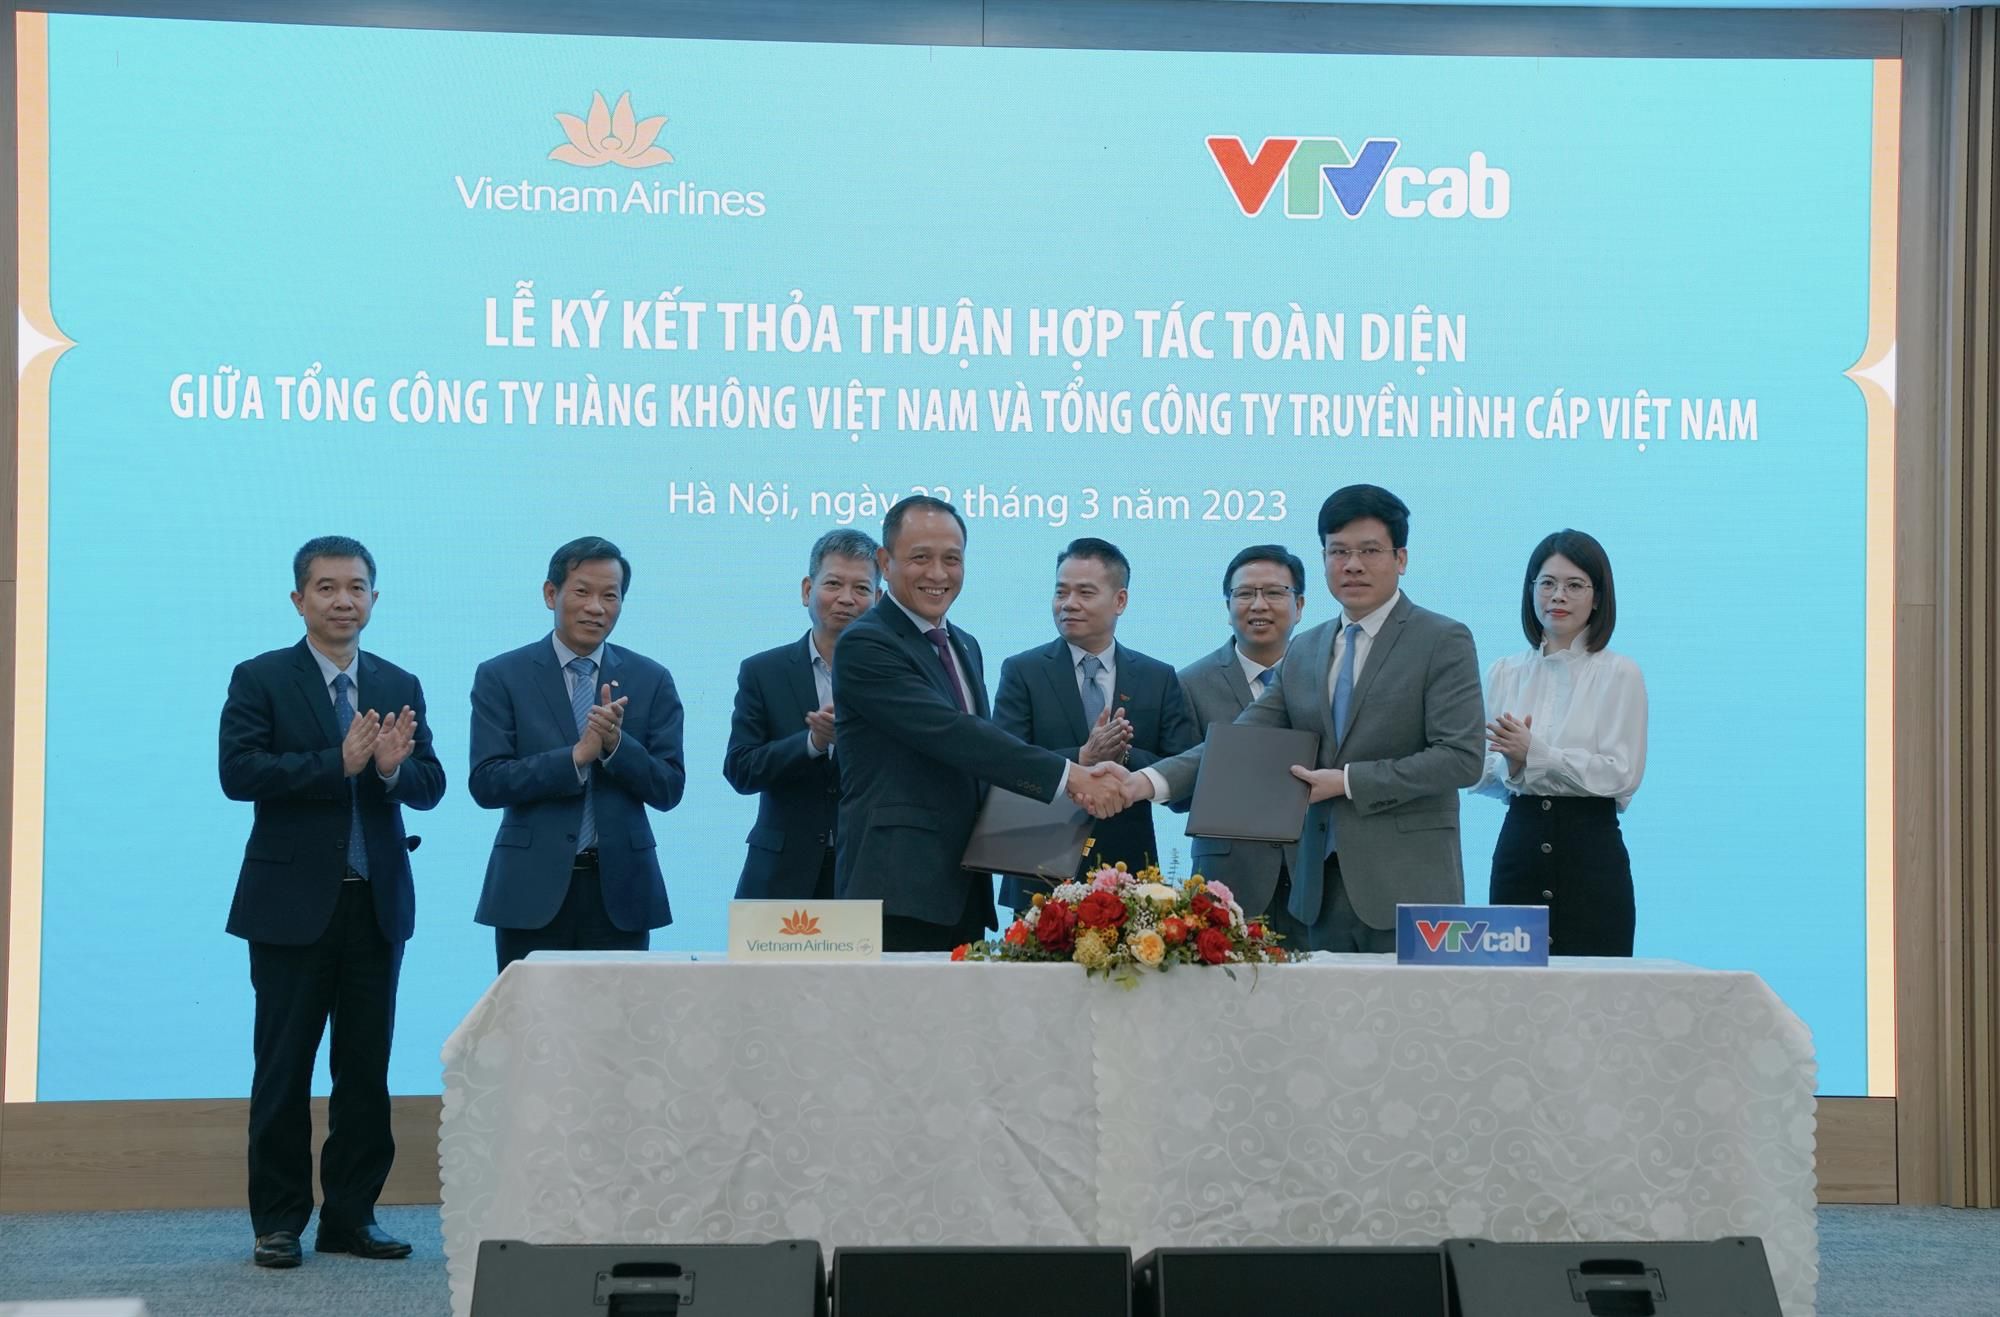 Vietnam Airlines ký kết thỏa thuận hợp tác toàn diện với VTV Cab